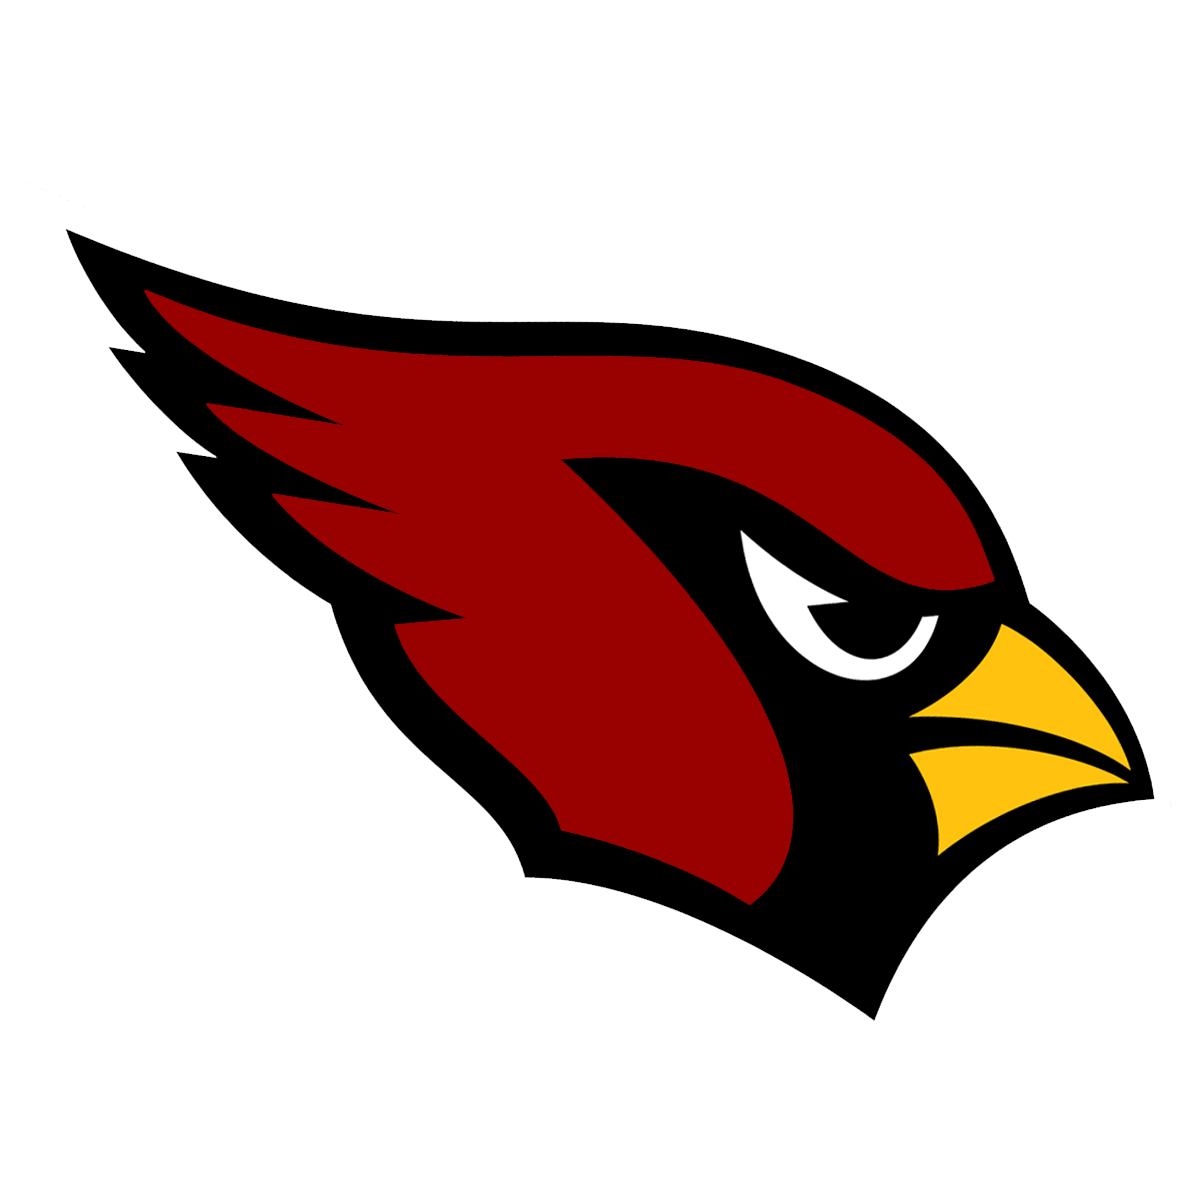 Cardinals Baseball Logo - Cardinal baseball svg transparent - RR collections